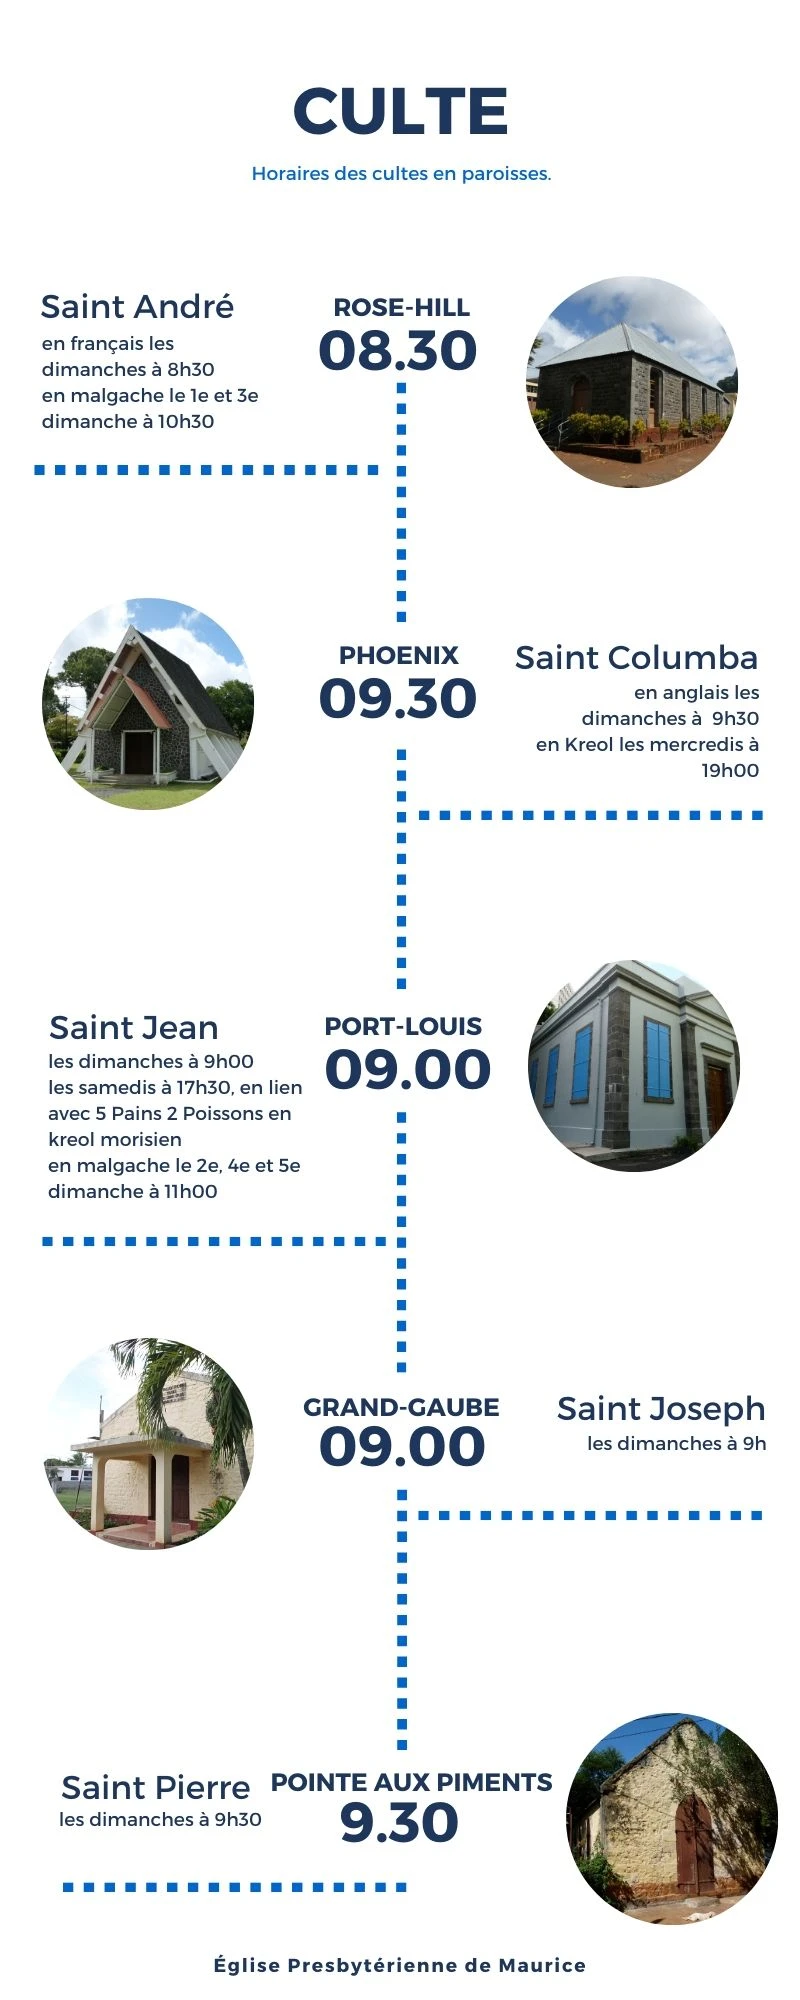 Culte du dimanche en paroisse : 8h30 à Rose-Hill (Saint-André); 9h00 à Port-Louis (Saint-Jean) et Grand-Gaube (Saint-Joseph); 9h30 à Phoenix (Saint-Columba) et Pointe-aux-Piments (Saint-Pierre)